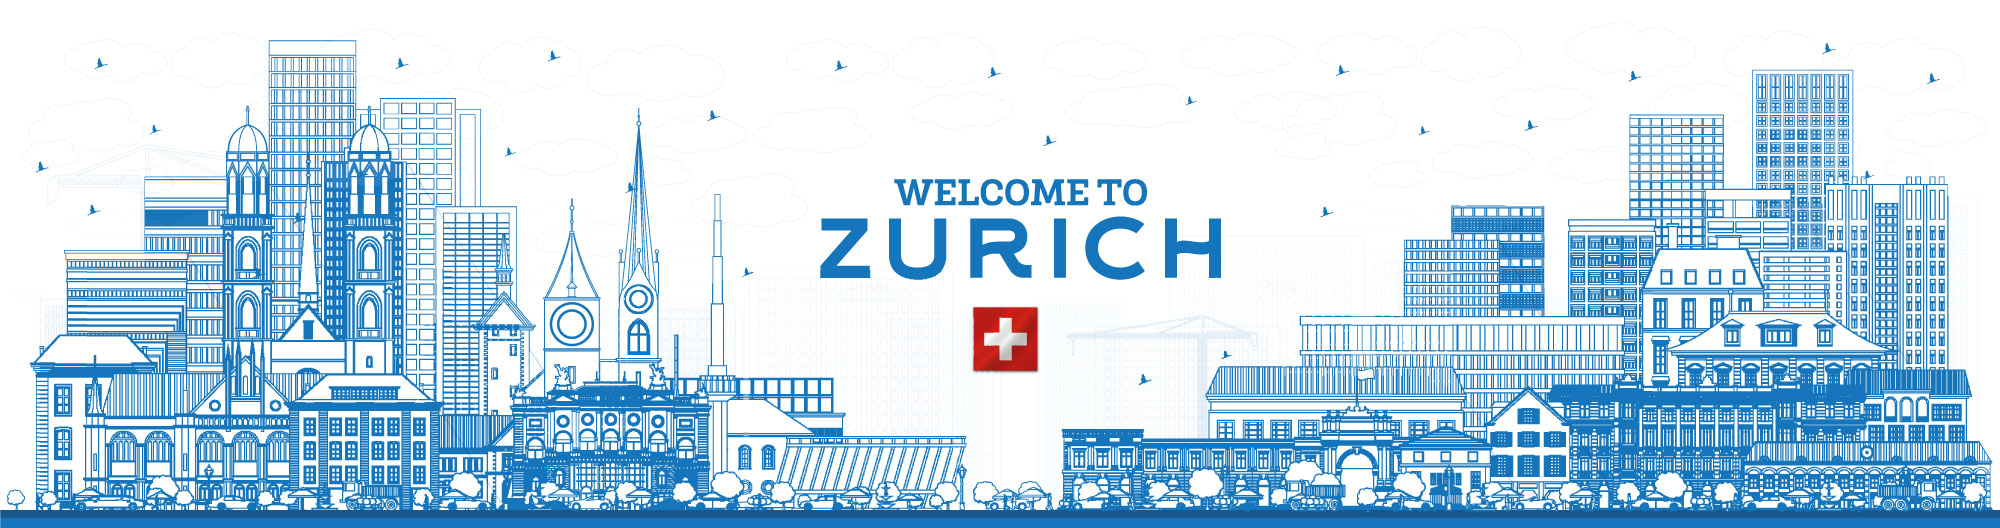 Welcome to Zurich